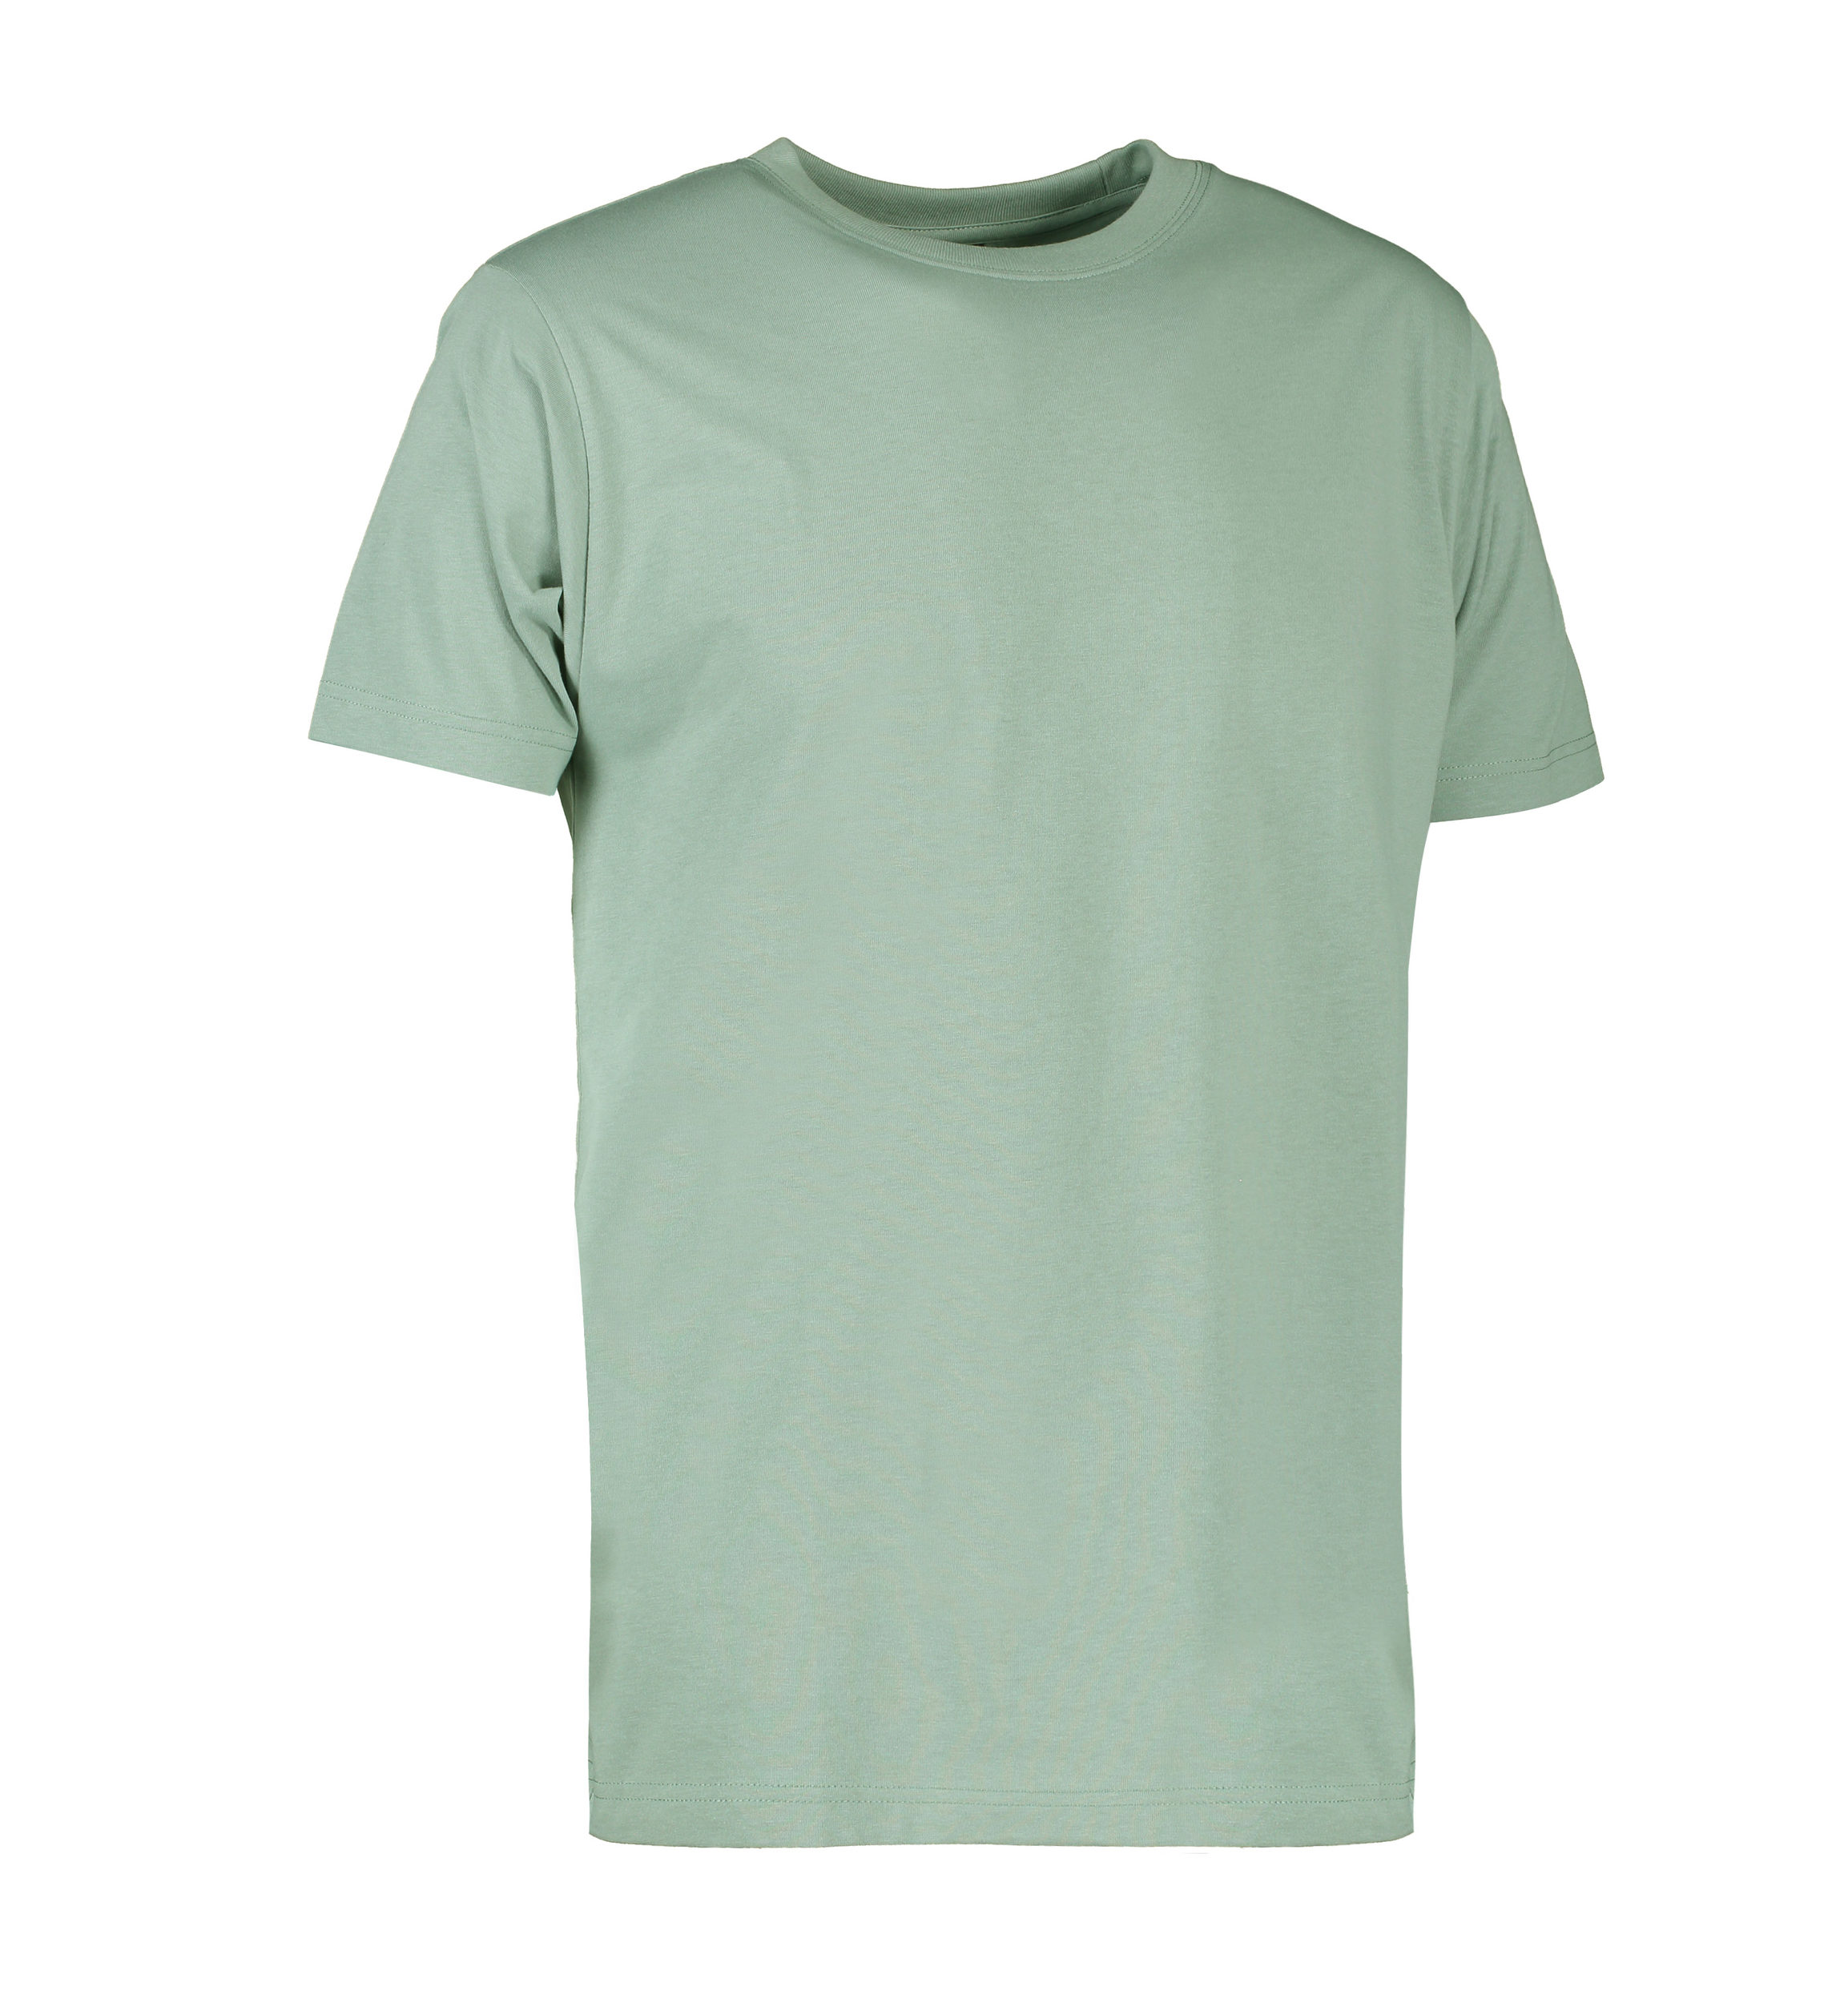 Se Slidstærk t-shirt i støvet grøn til mænd - XL hos Sygeplejebutikken.dk